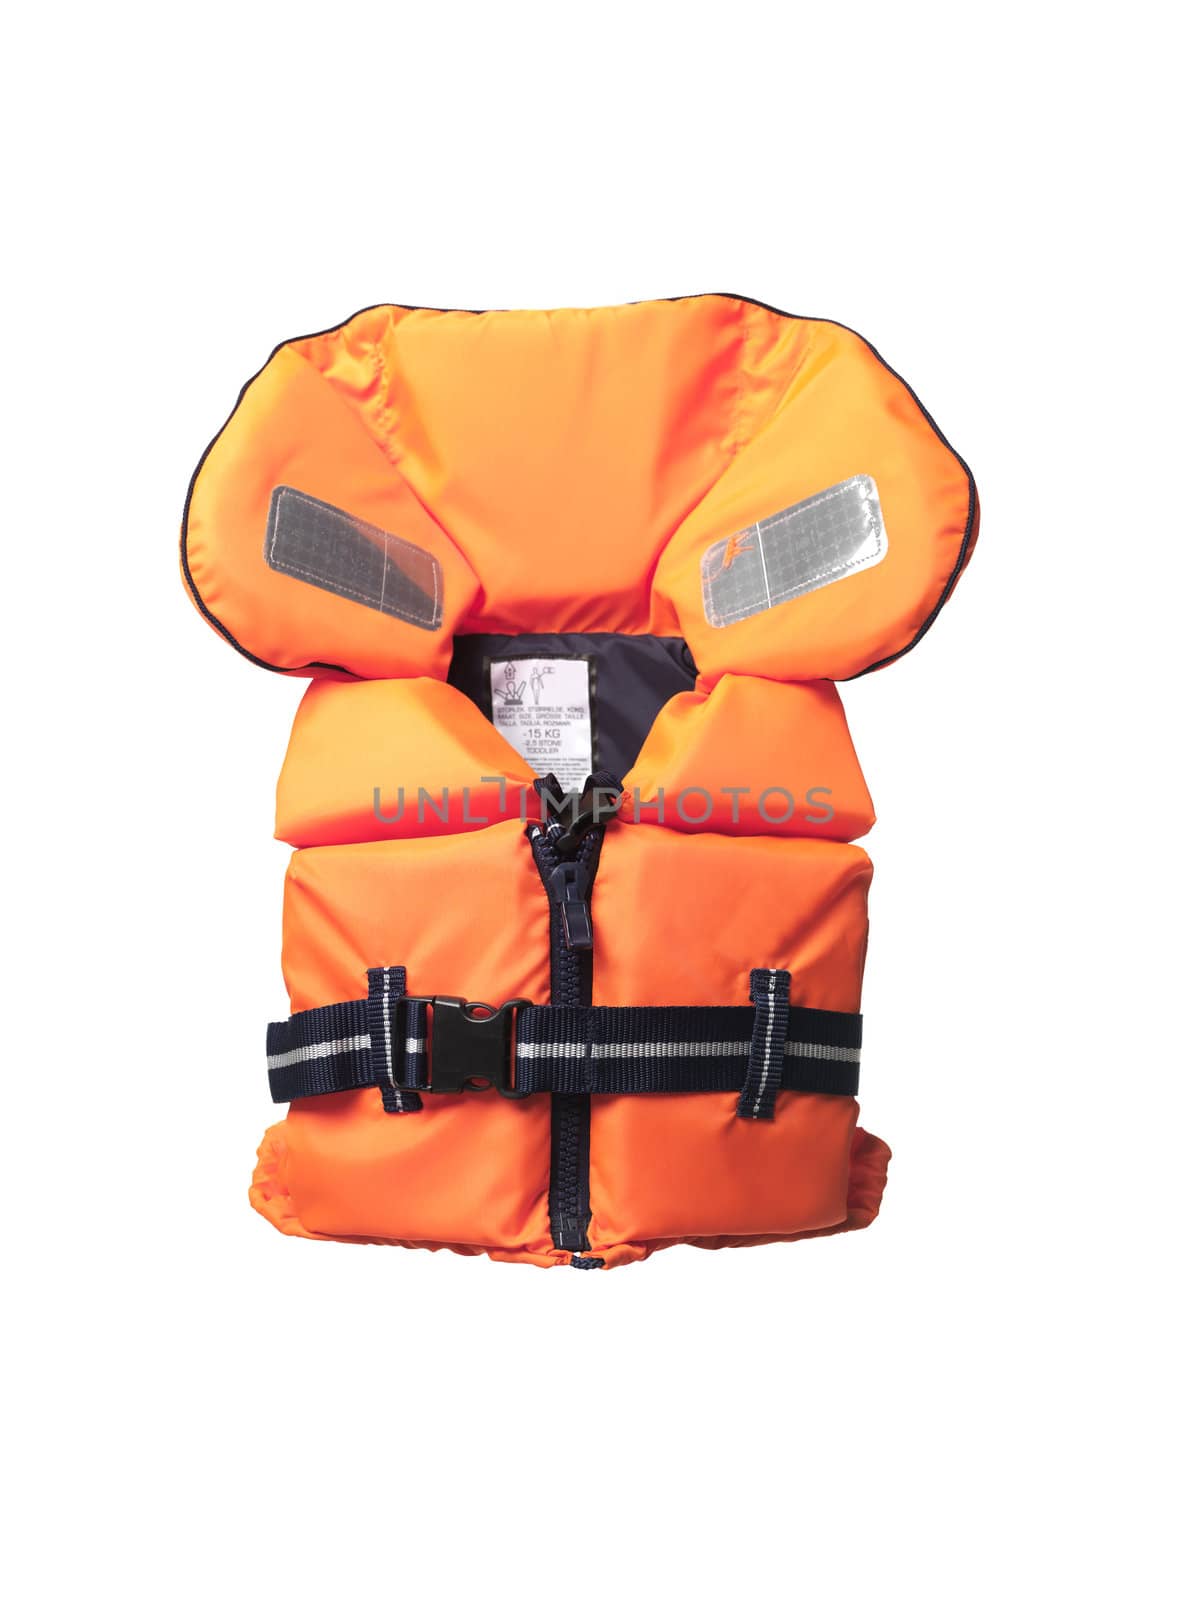 life jacket by gemenacom